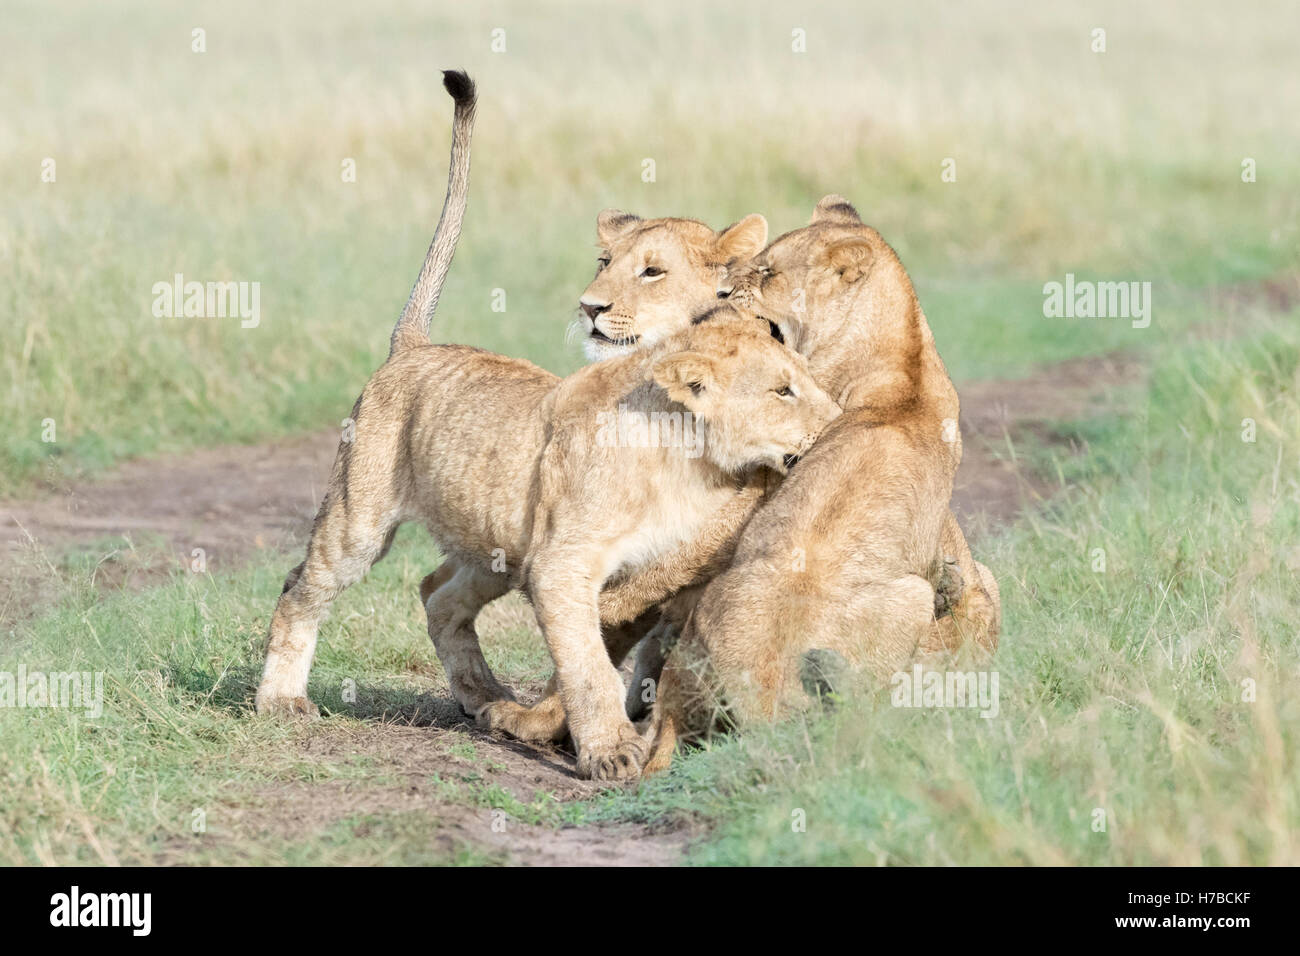 Junge Löwen (Panthera Leo) zusammen zu spielen, reserve Masai Mara national, Kenia Stockfoto